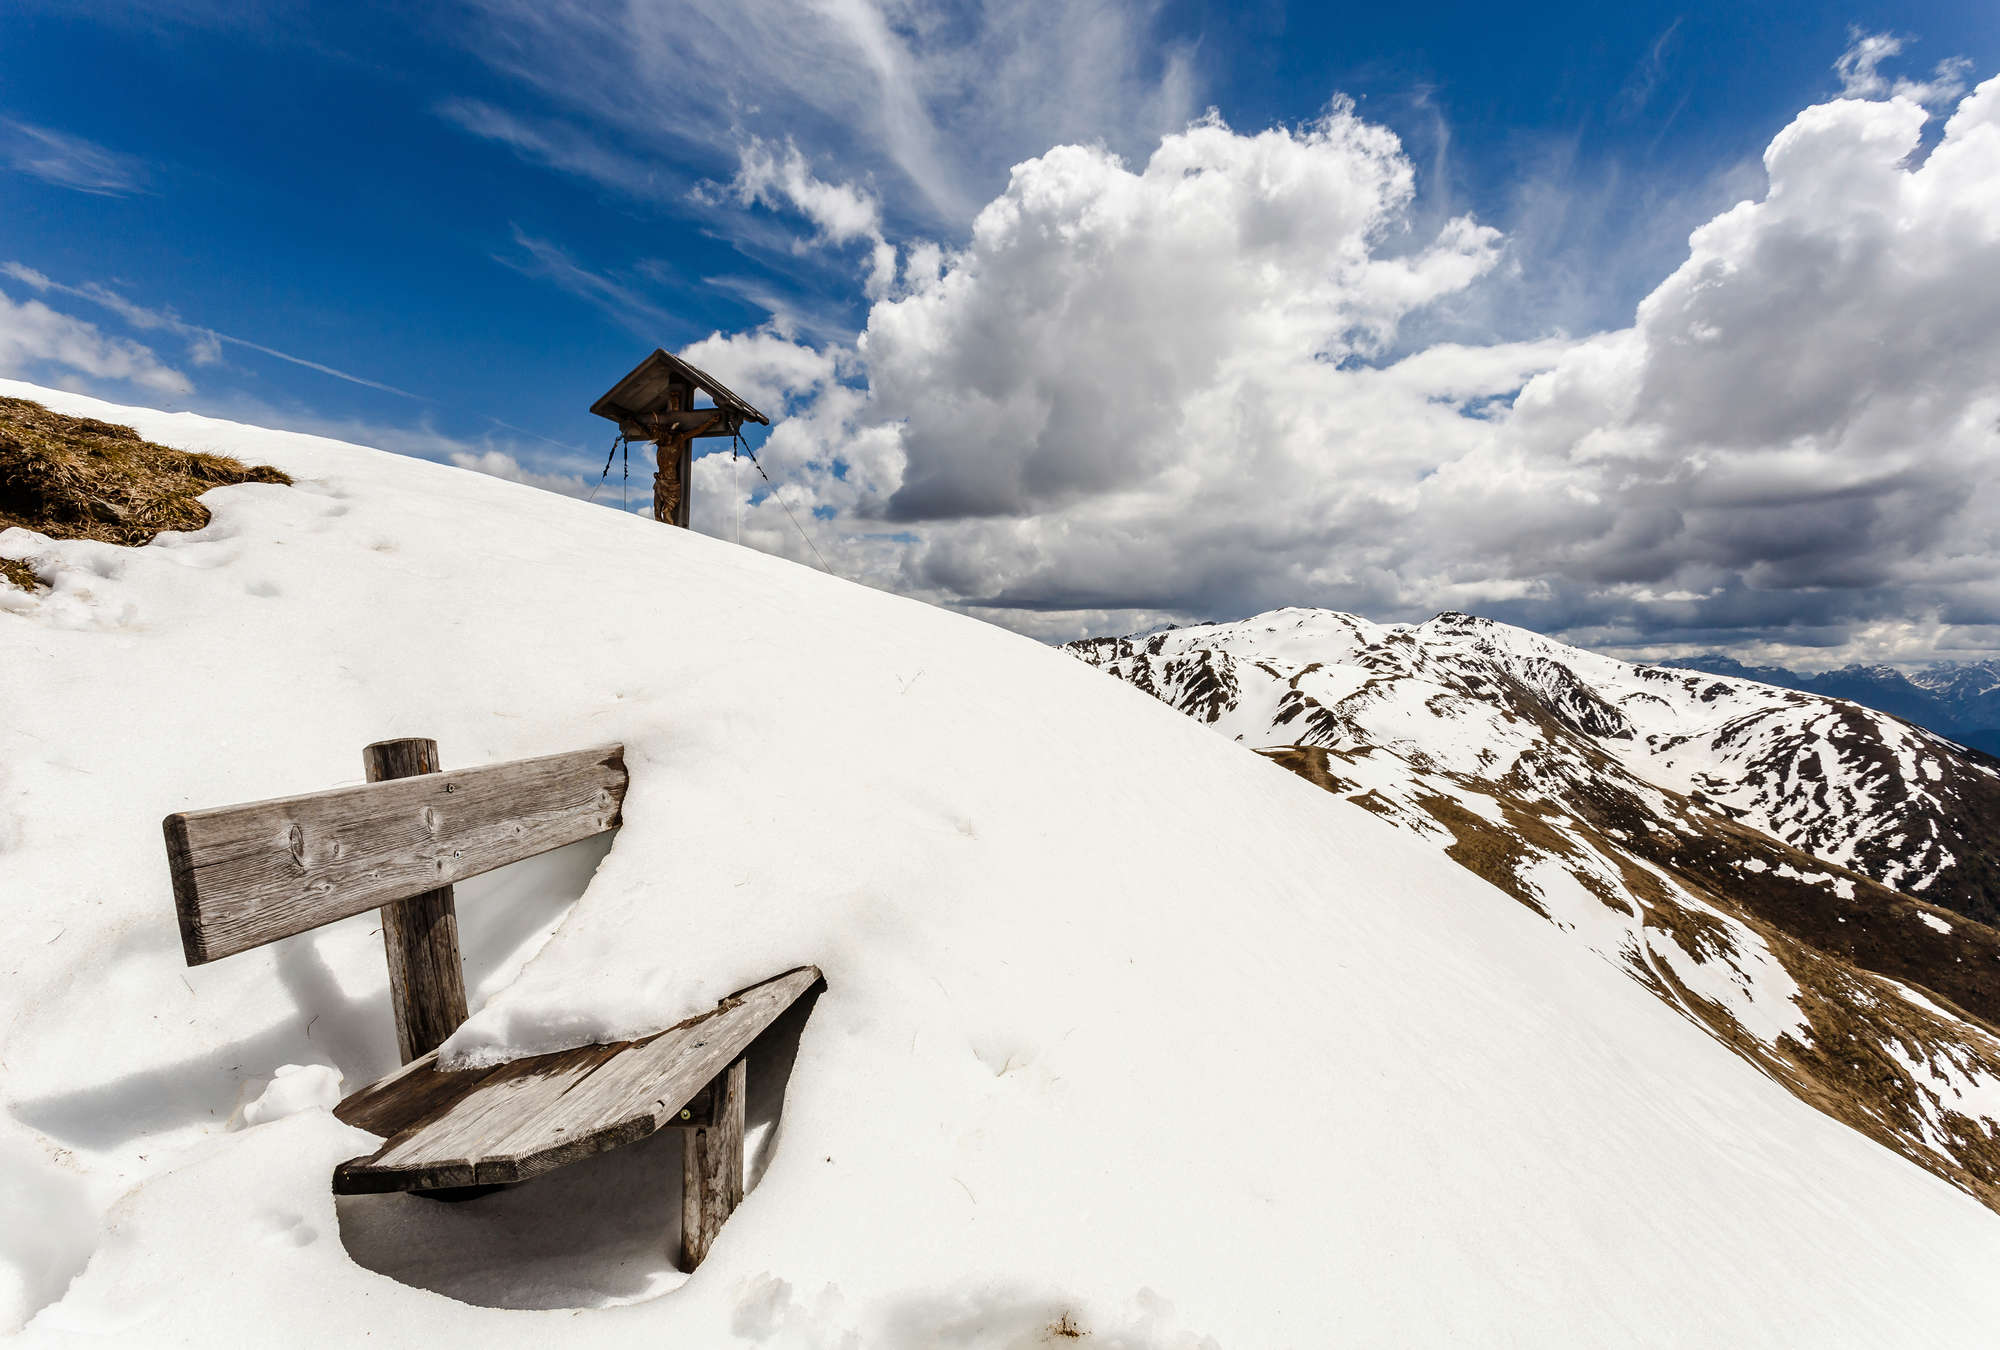             Papier peint panoramique paysage d'hiver dans les montagnes - banc enneigé
        